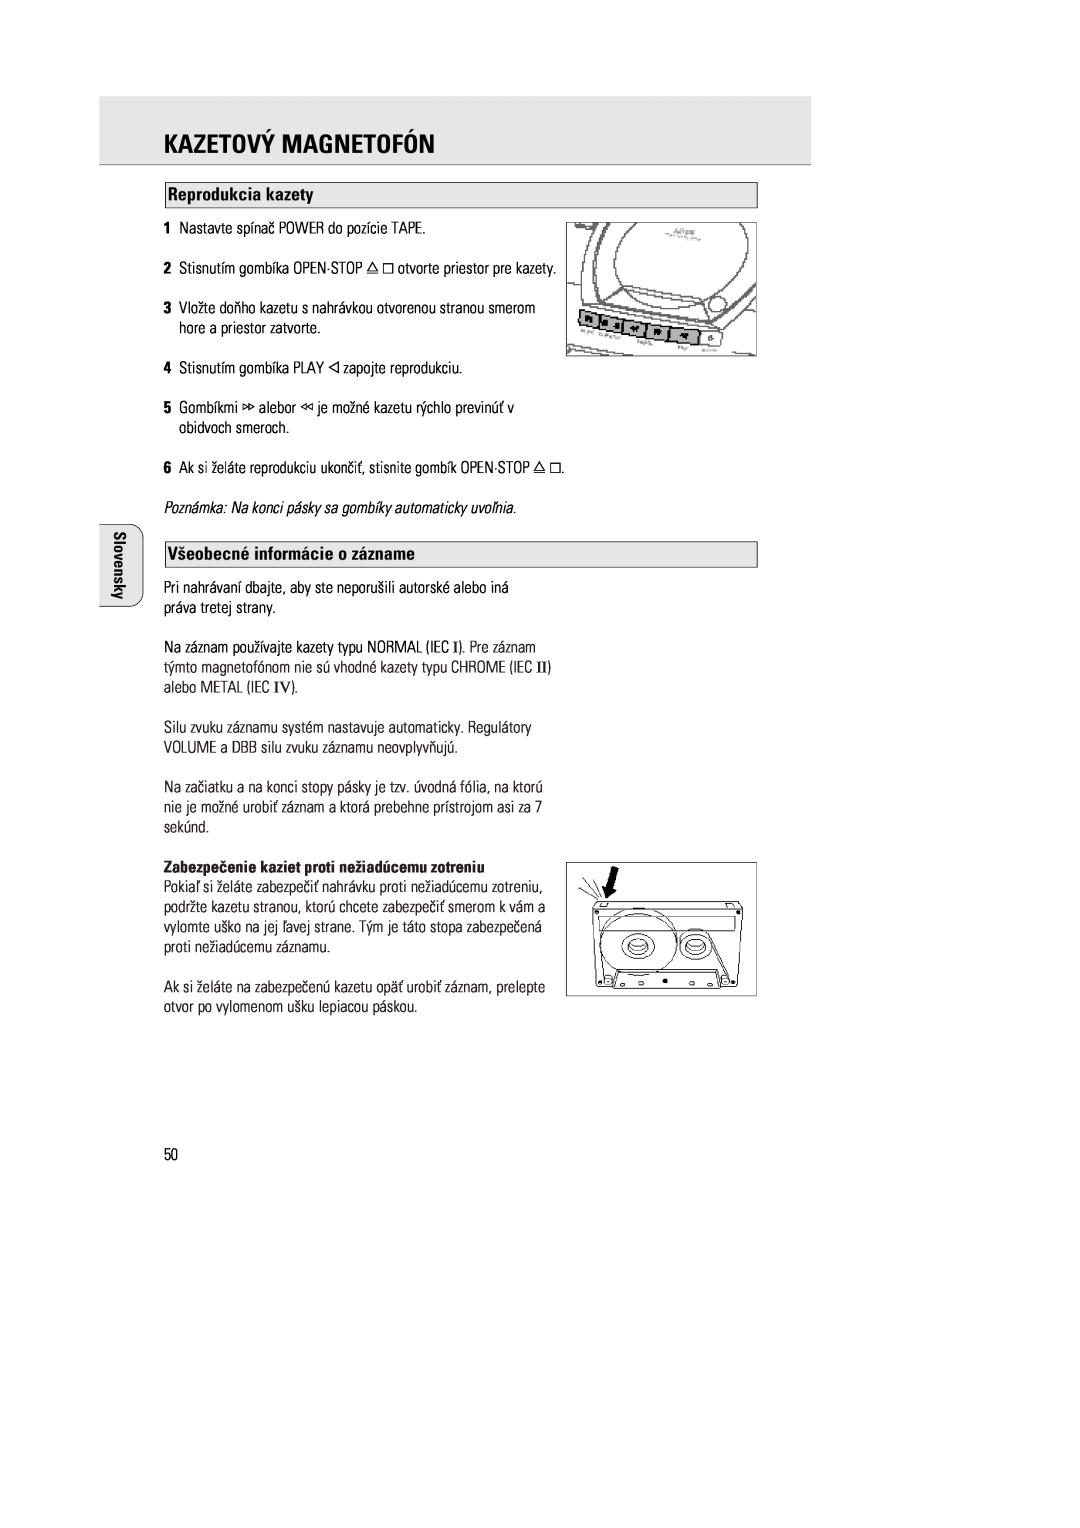 Philips 1030 manual KAZETOVà MAGNETOFîN, Reprodukcia kazety, V¶eobecnŽ inform‡cie o z‡zname, Slovensky 